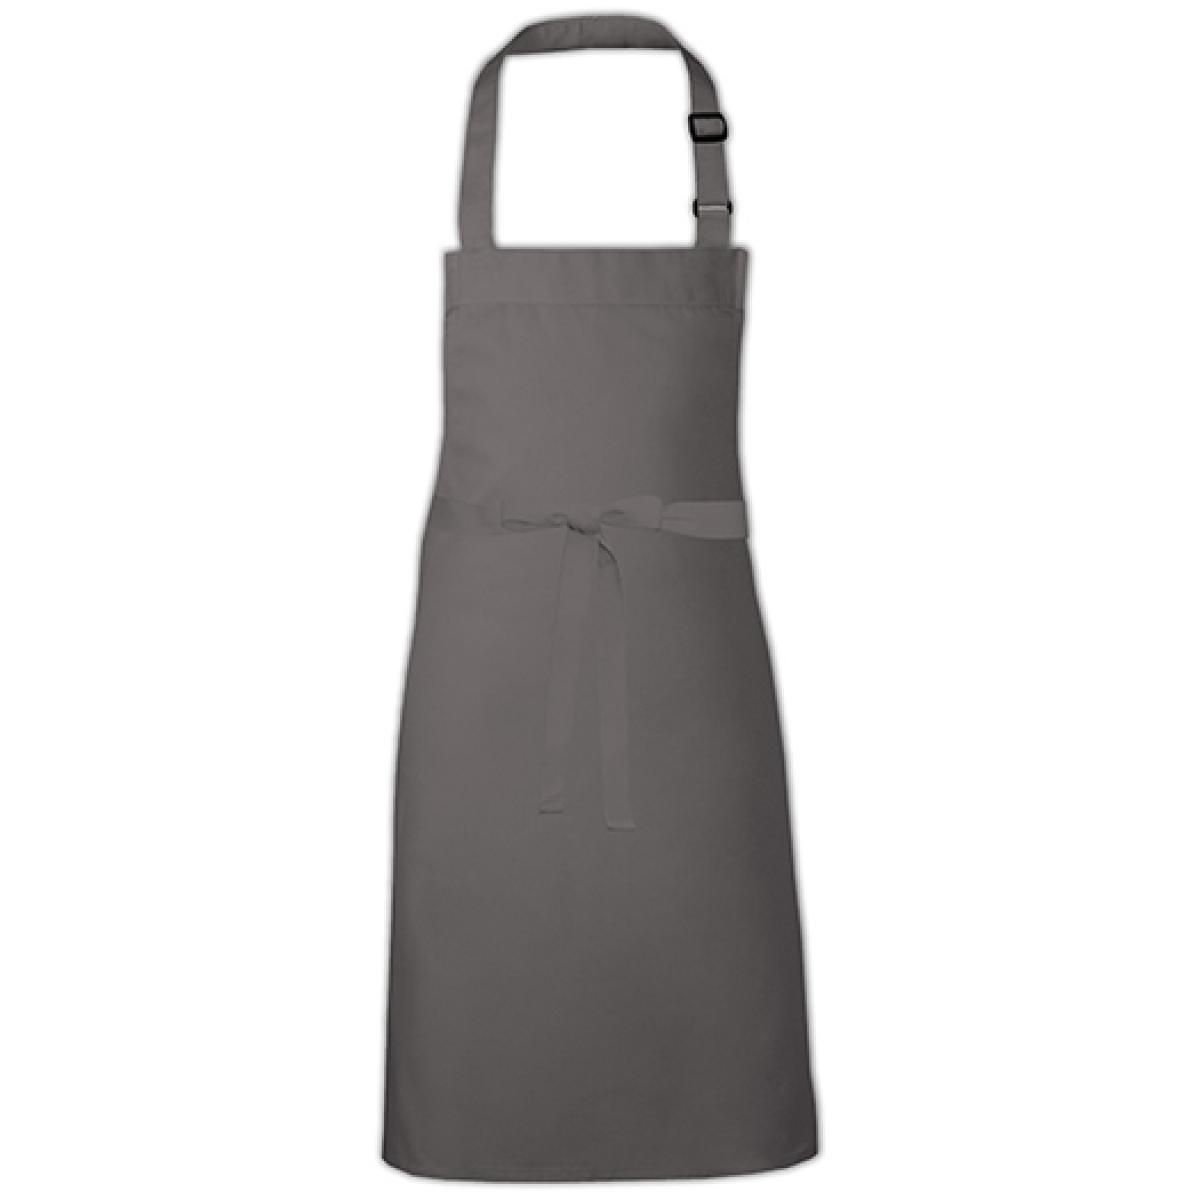 Hersteller: Link Kitchen Wear Herstellernummer: BBQ9073ADJ Artikelbezeichnung: Barbecue Apron adjustable 73 x 90 cm -  Waschbar bis 60 °C Farbe: Dark Grey (ca. Pantone 431)